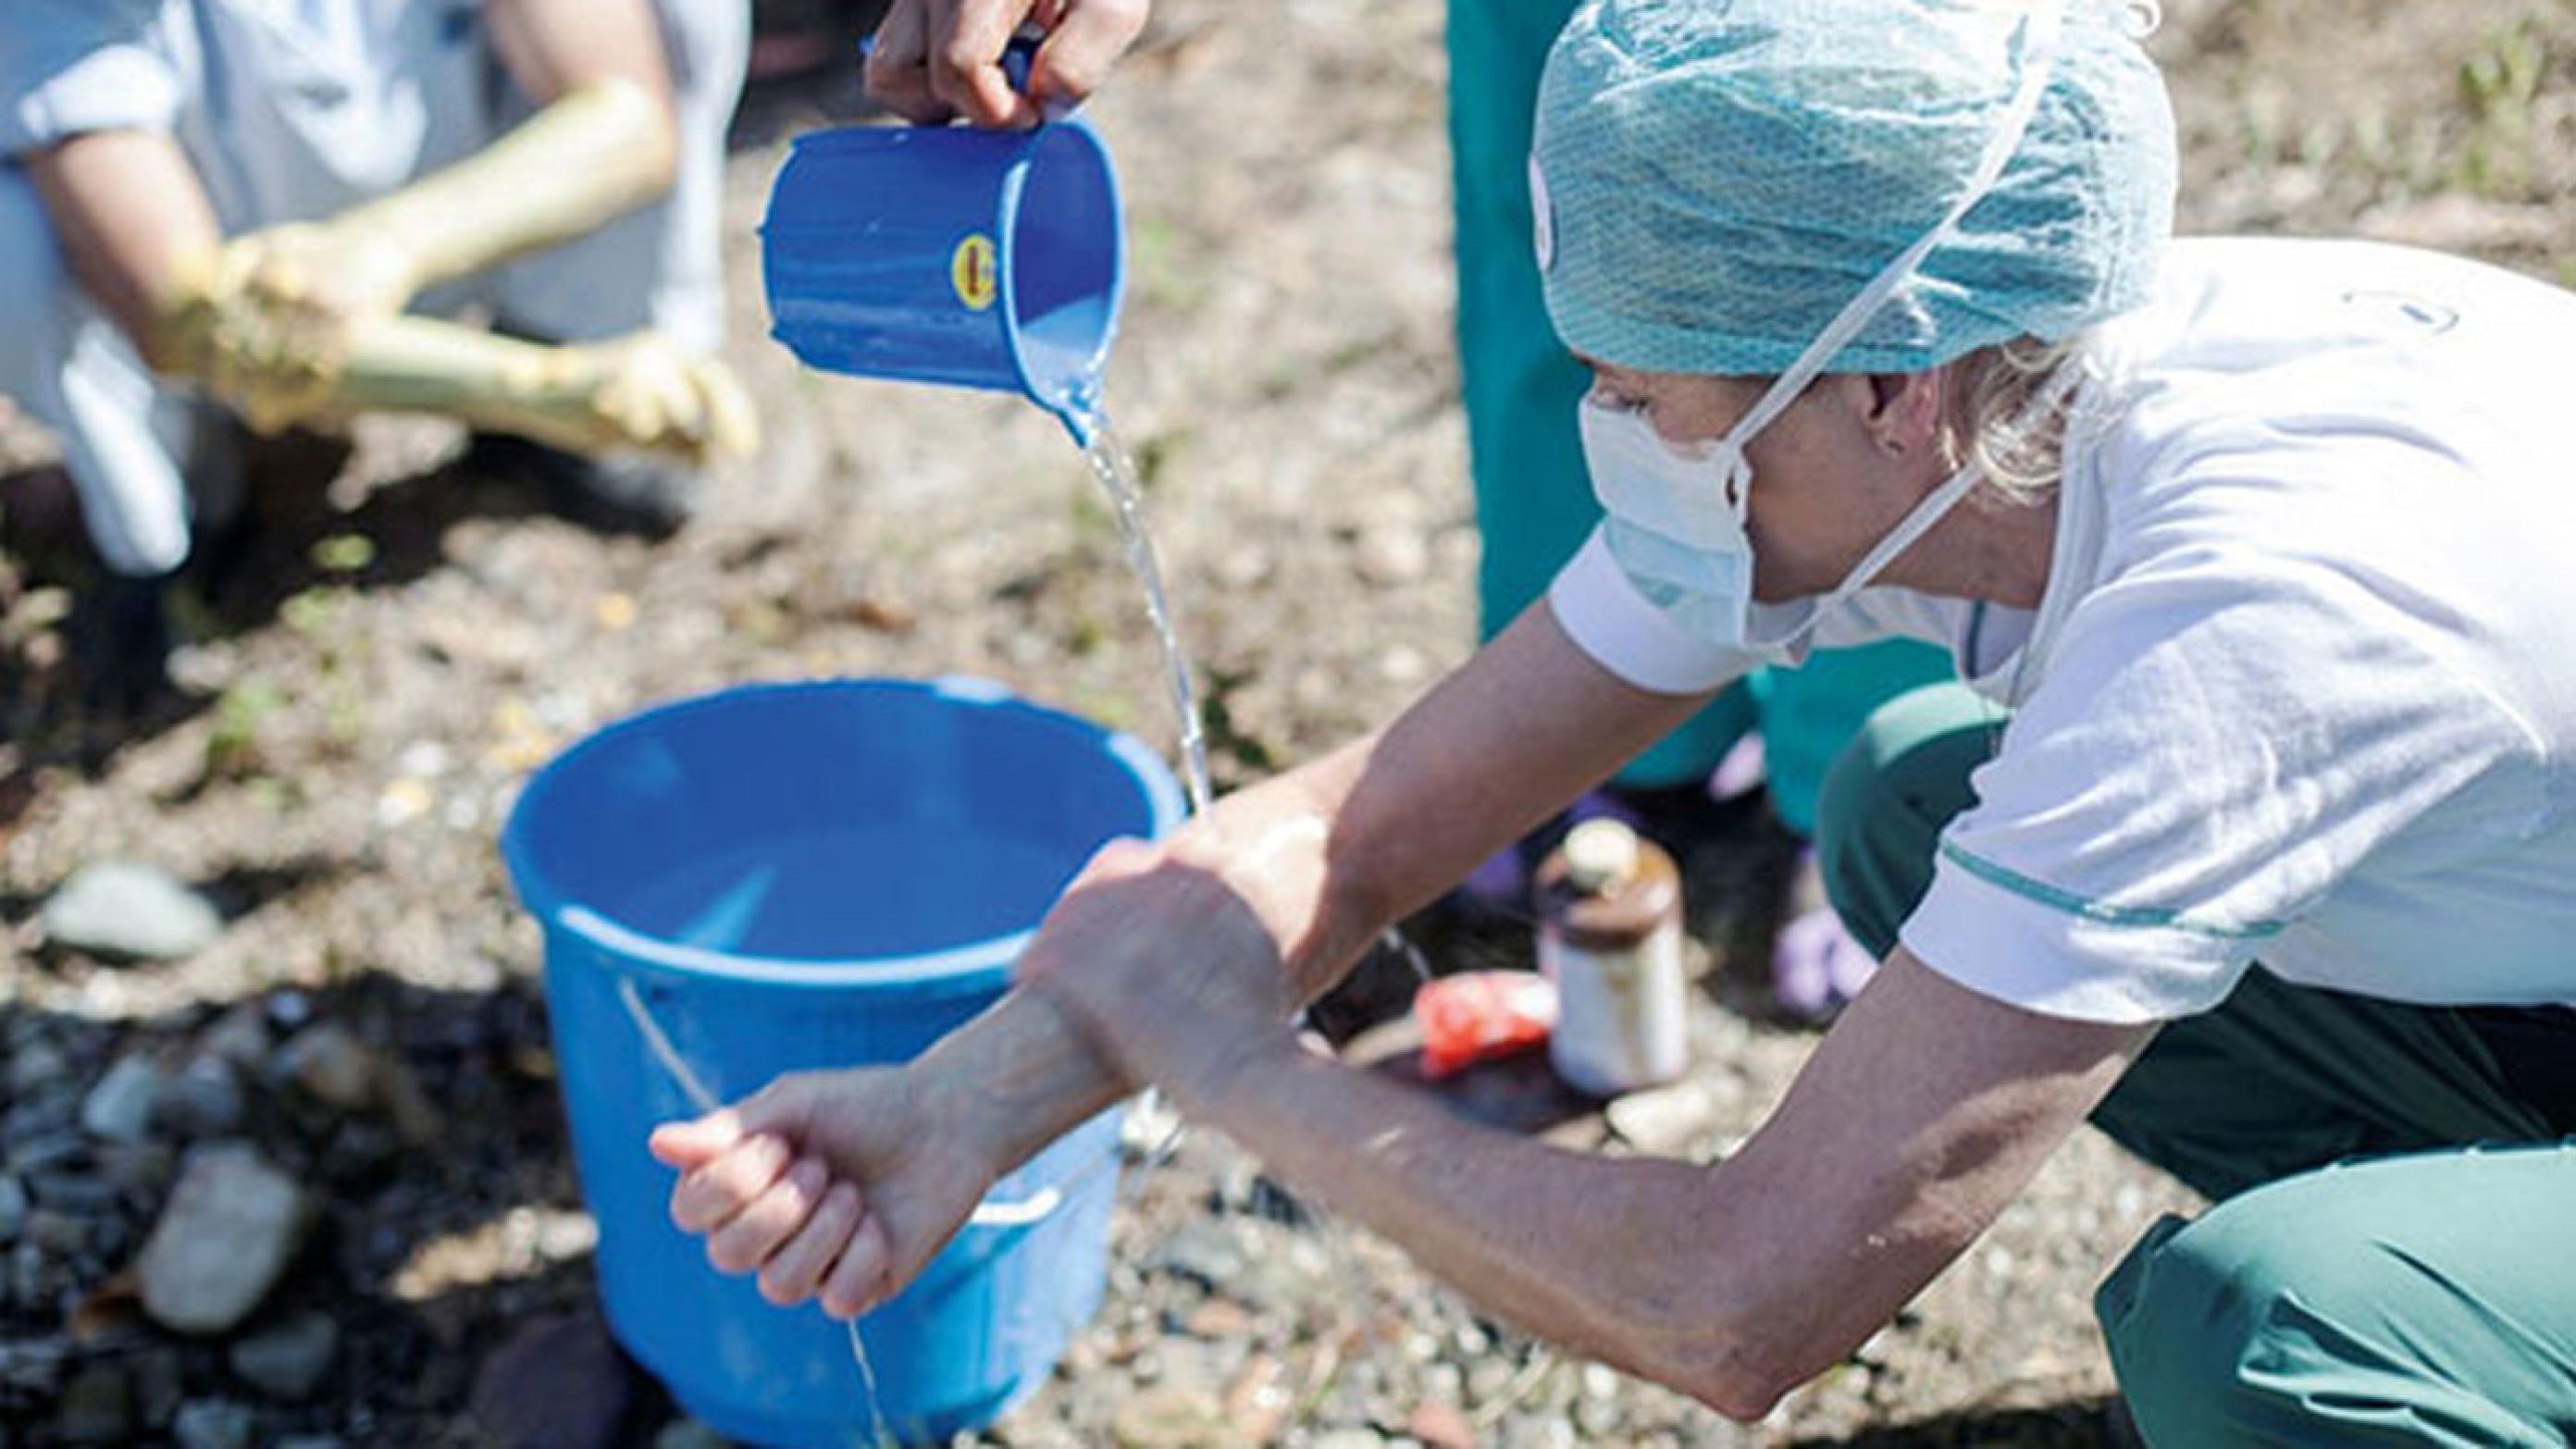 Øjenkirurg Gøril Boberg-Ans vasker hænder inden operationerne. Privatfoto fra Nepal.